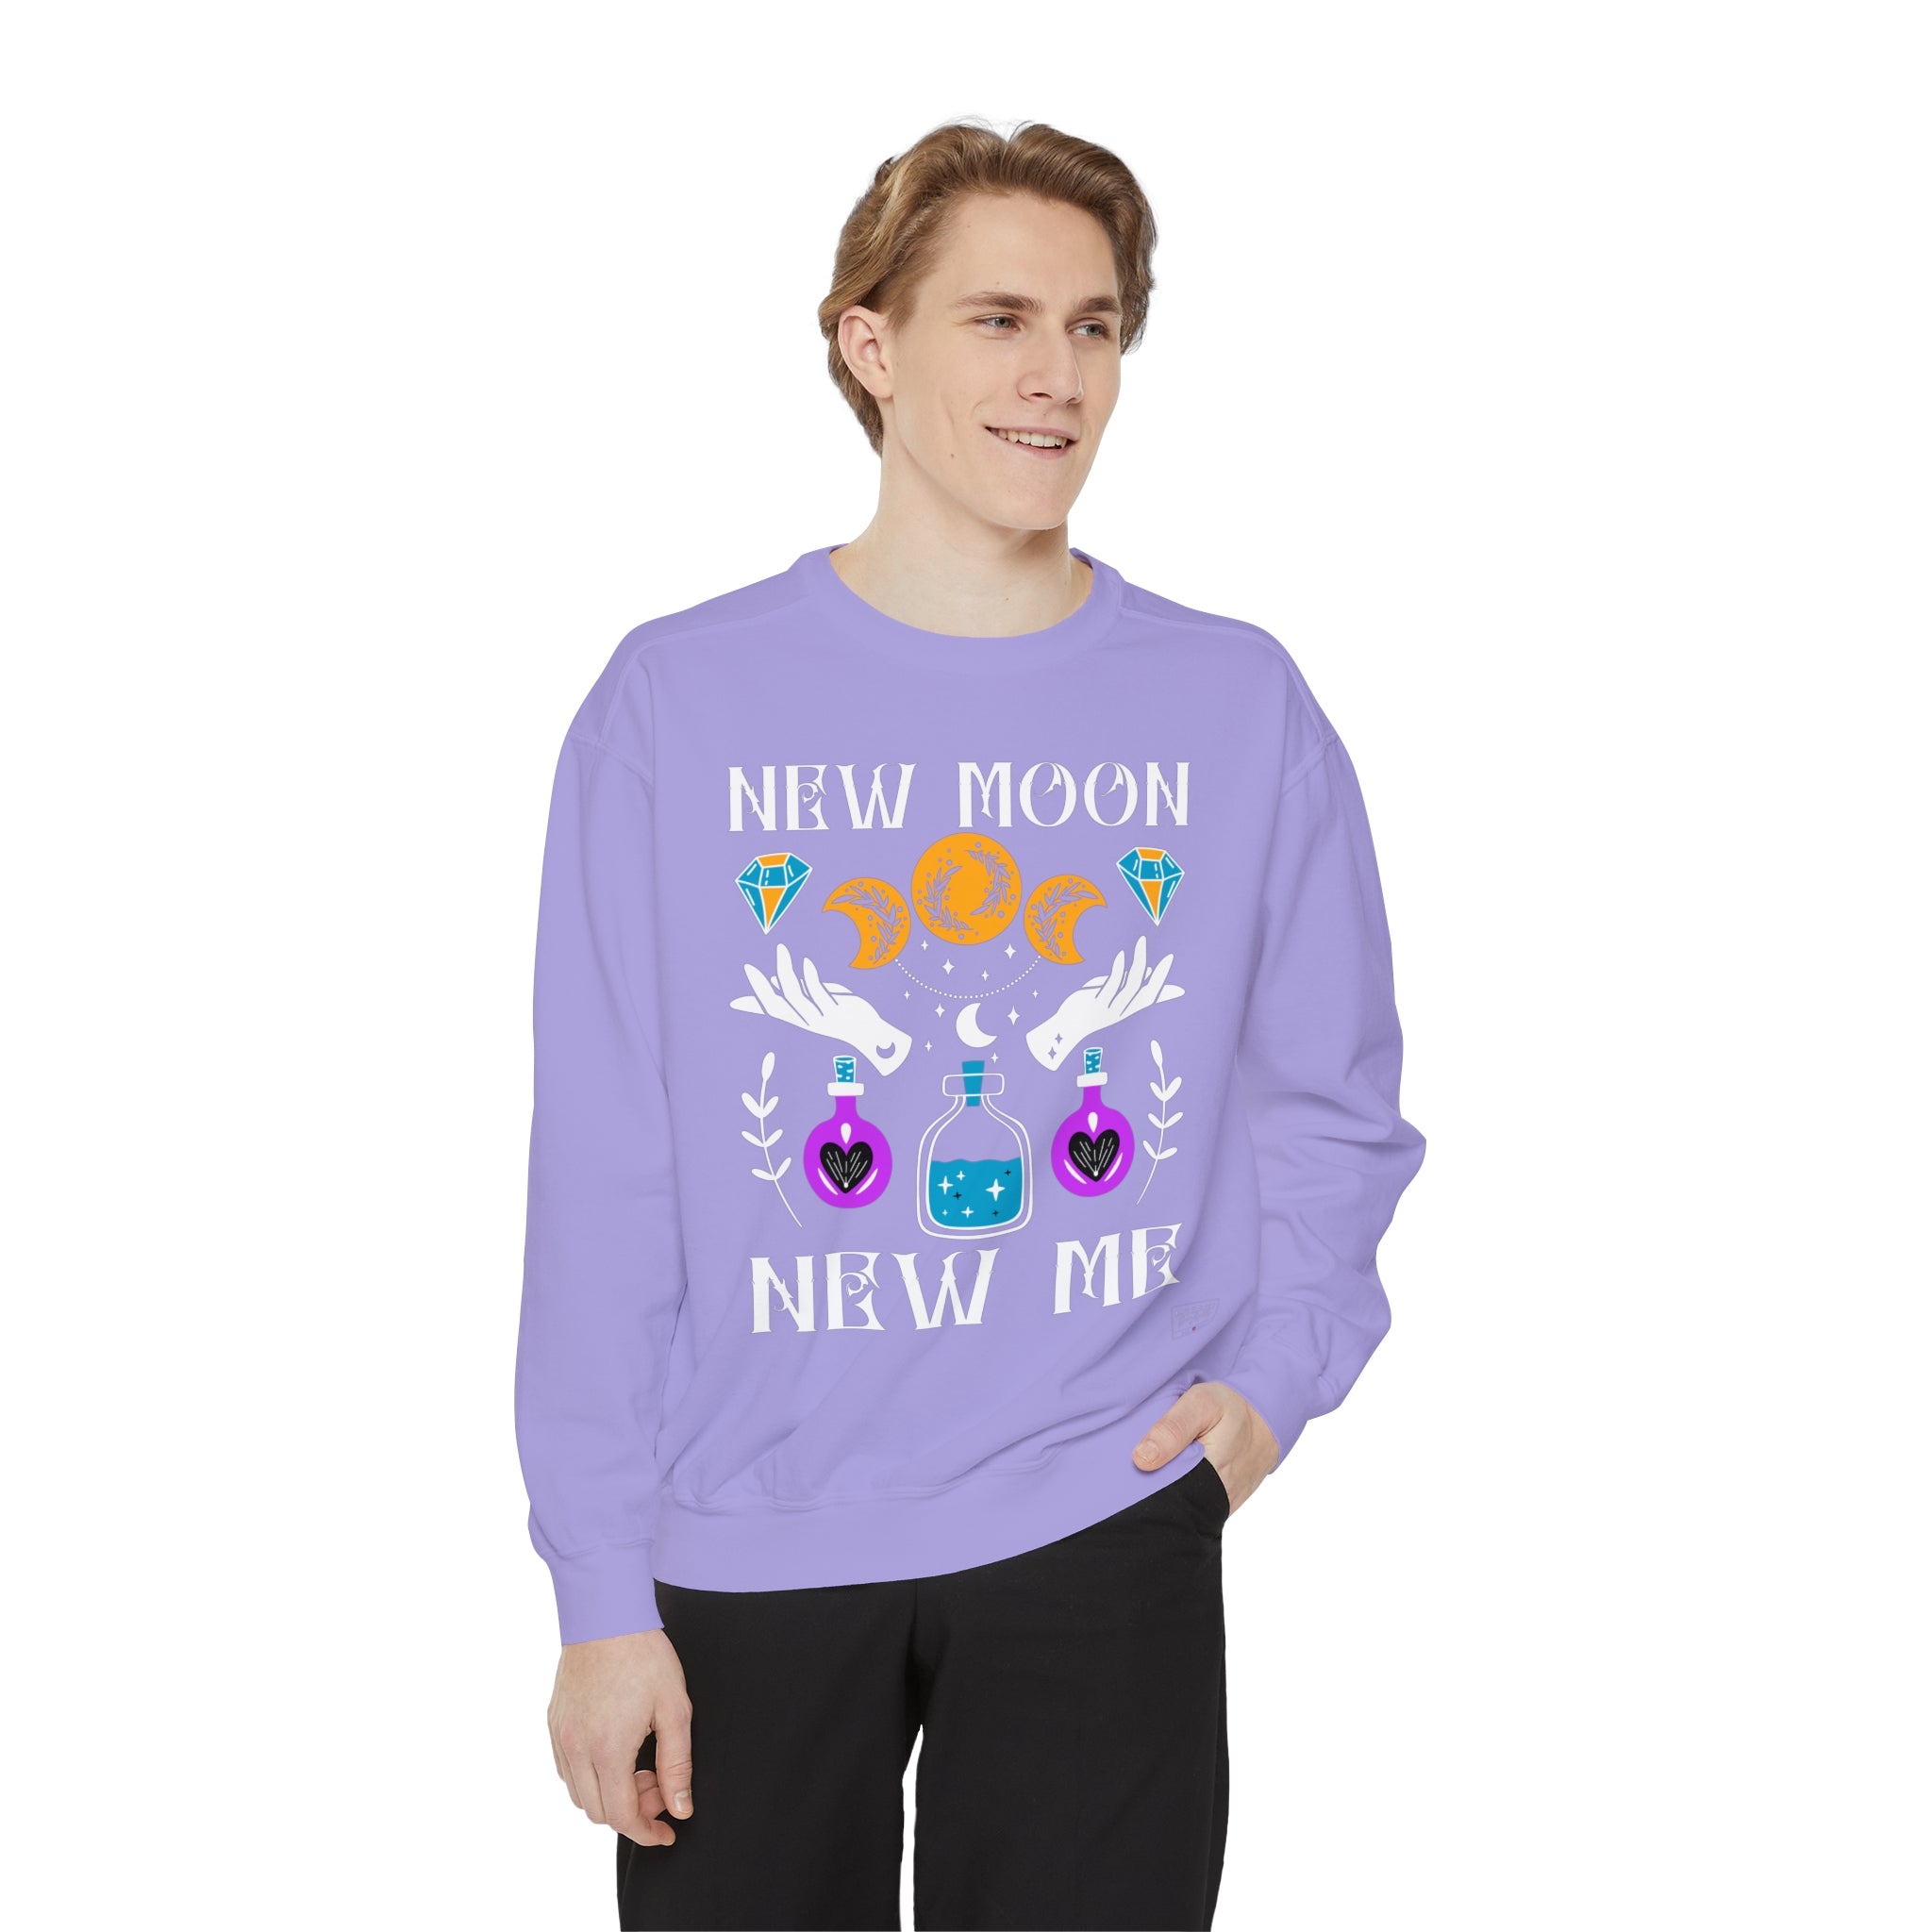 Unisex New Moon, New Me Sweatshirt